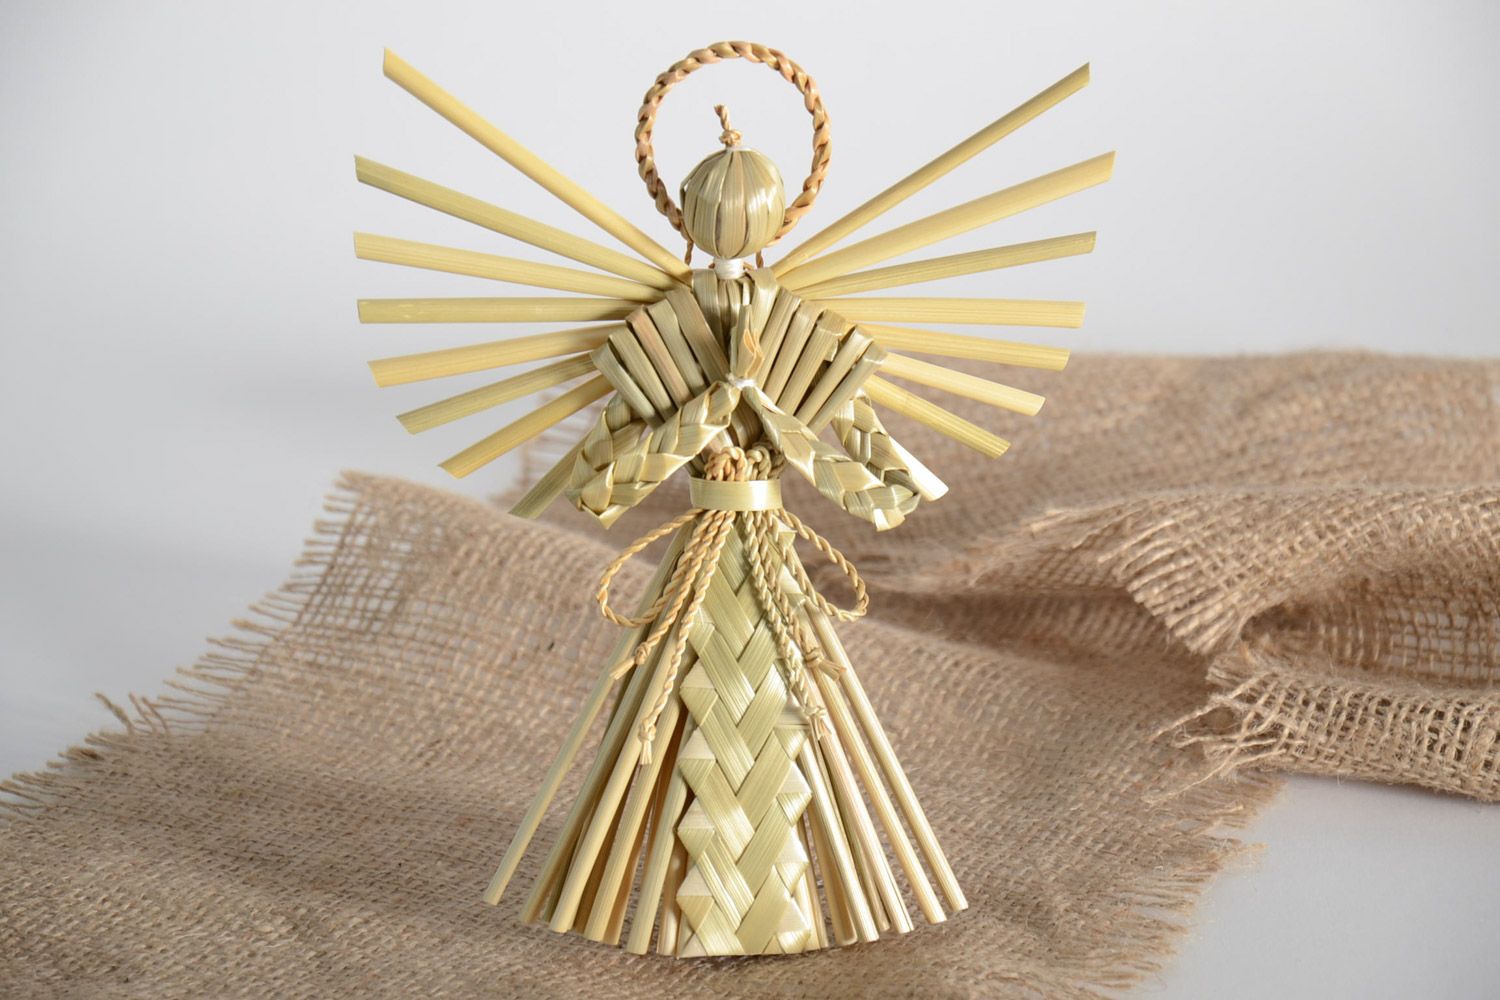 Интерьерная подвеска плетеная из соломы Ангел-хранитель ручной работы эко декор  фото 1